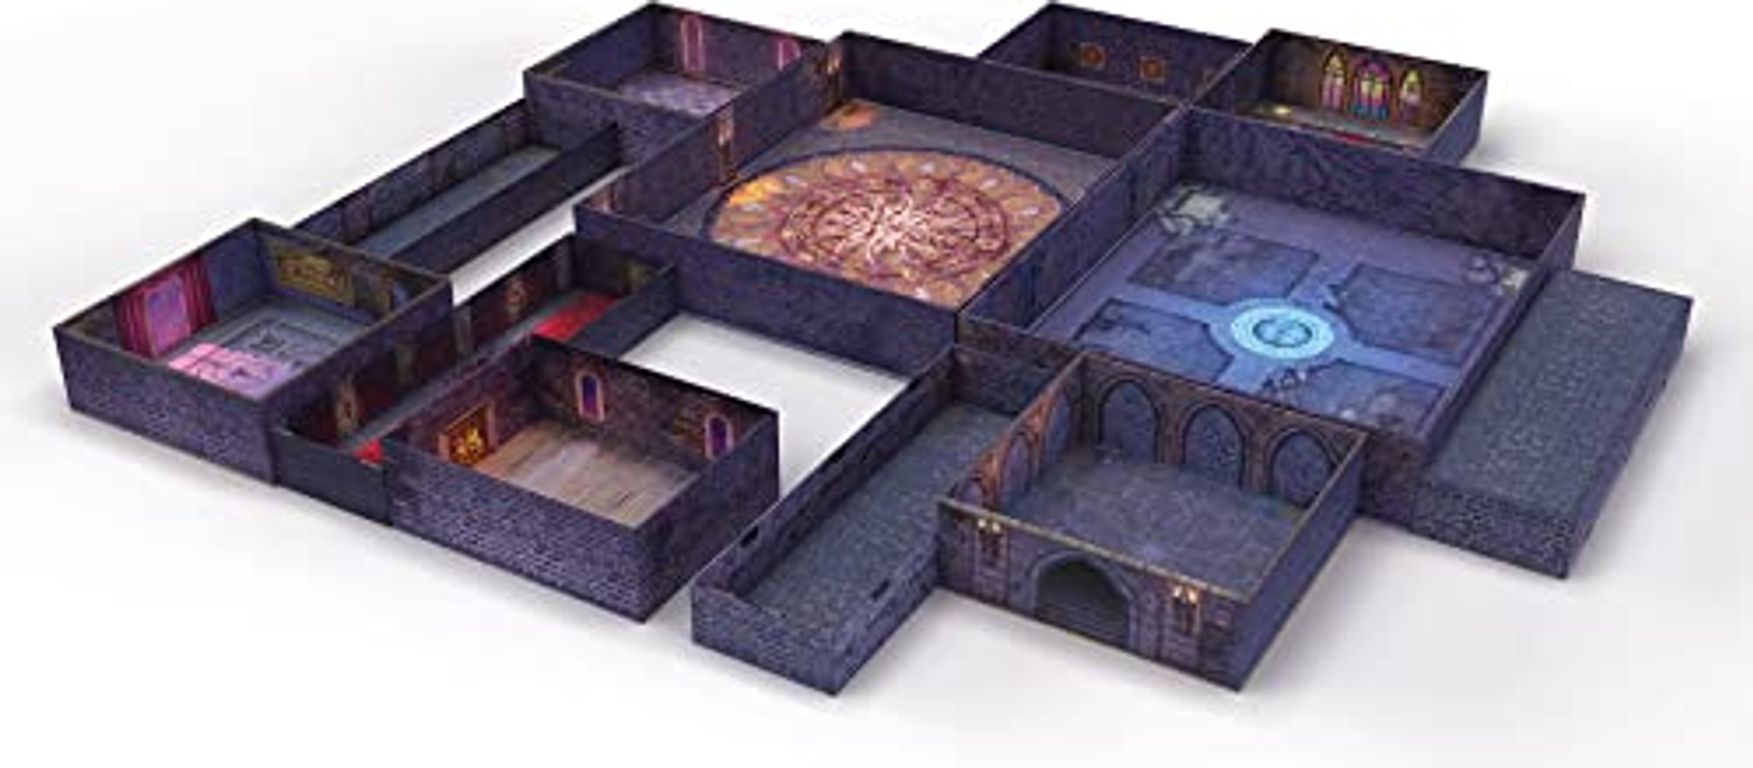 Tenfold Dungeon: The Castle komponenten